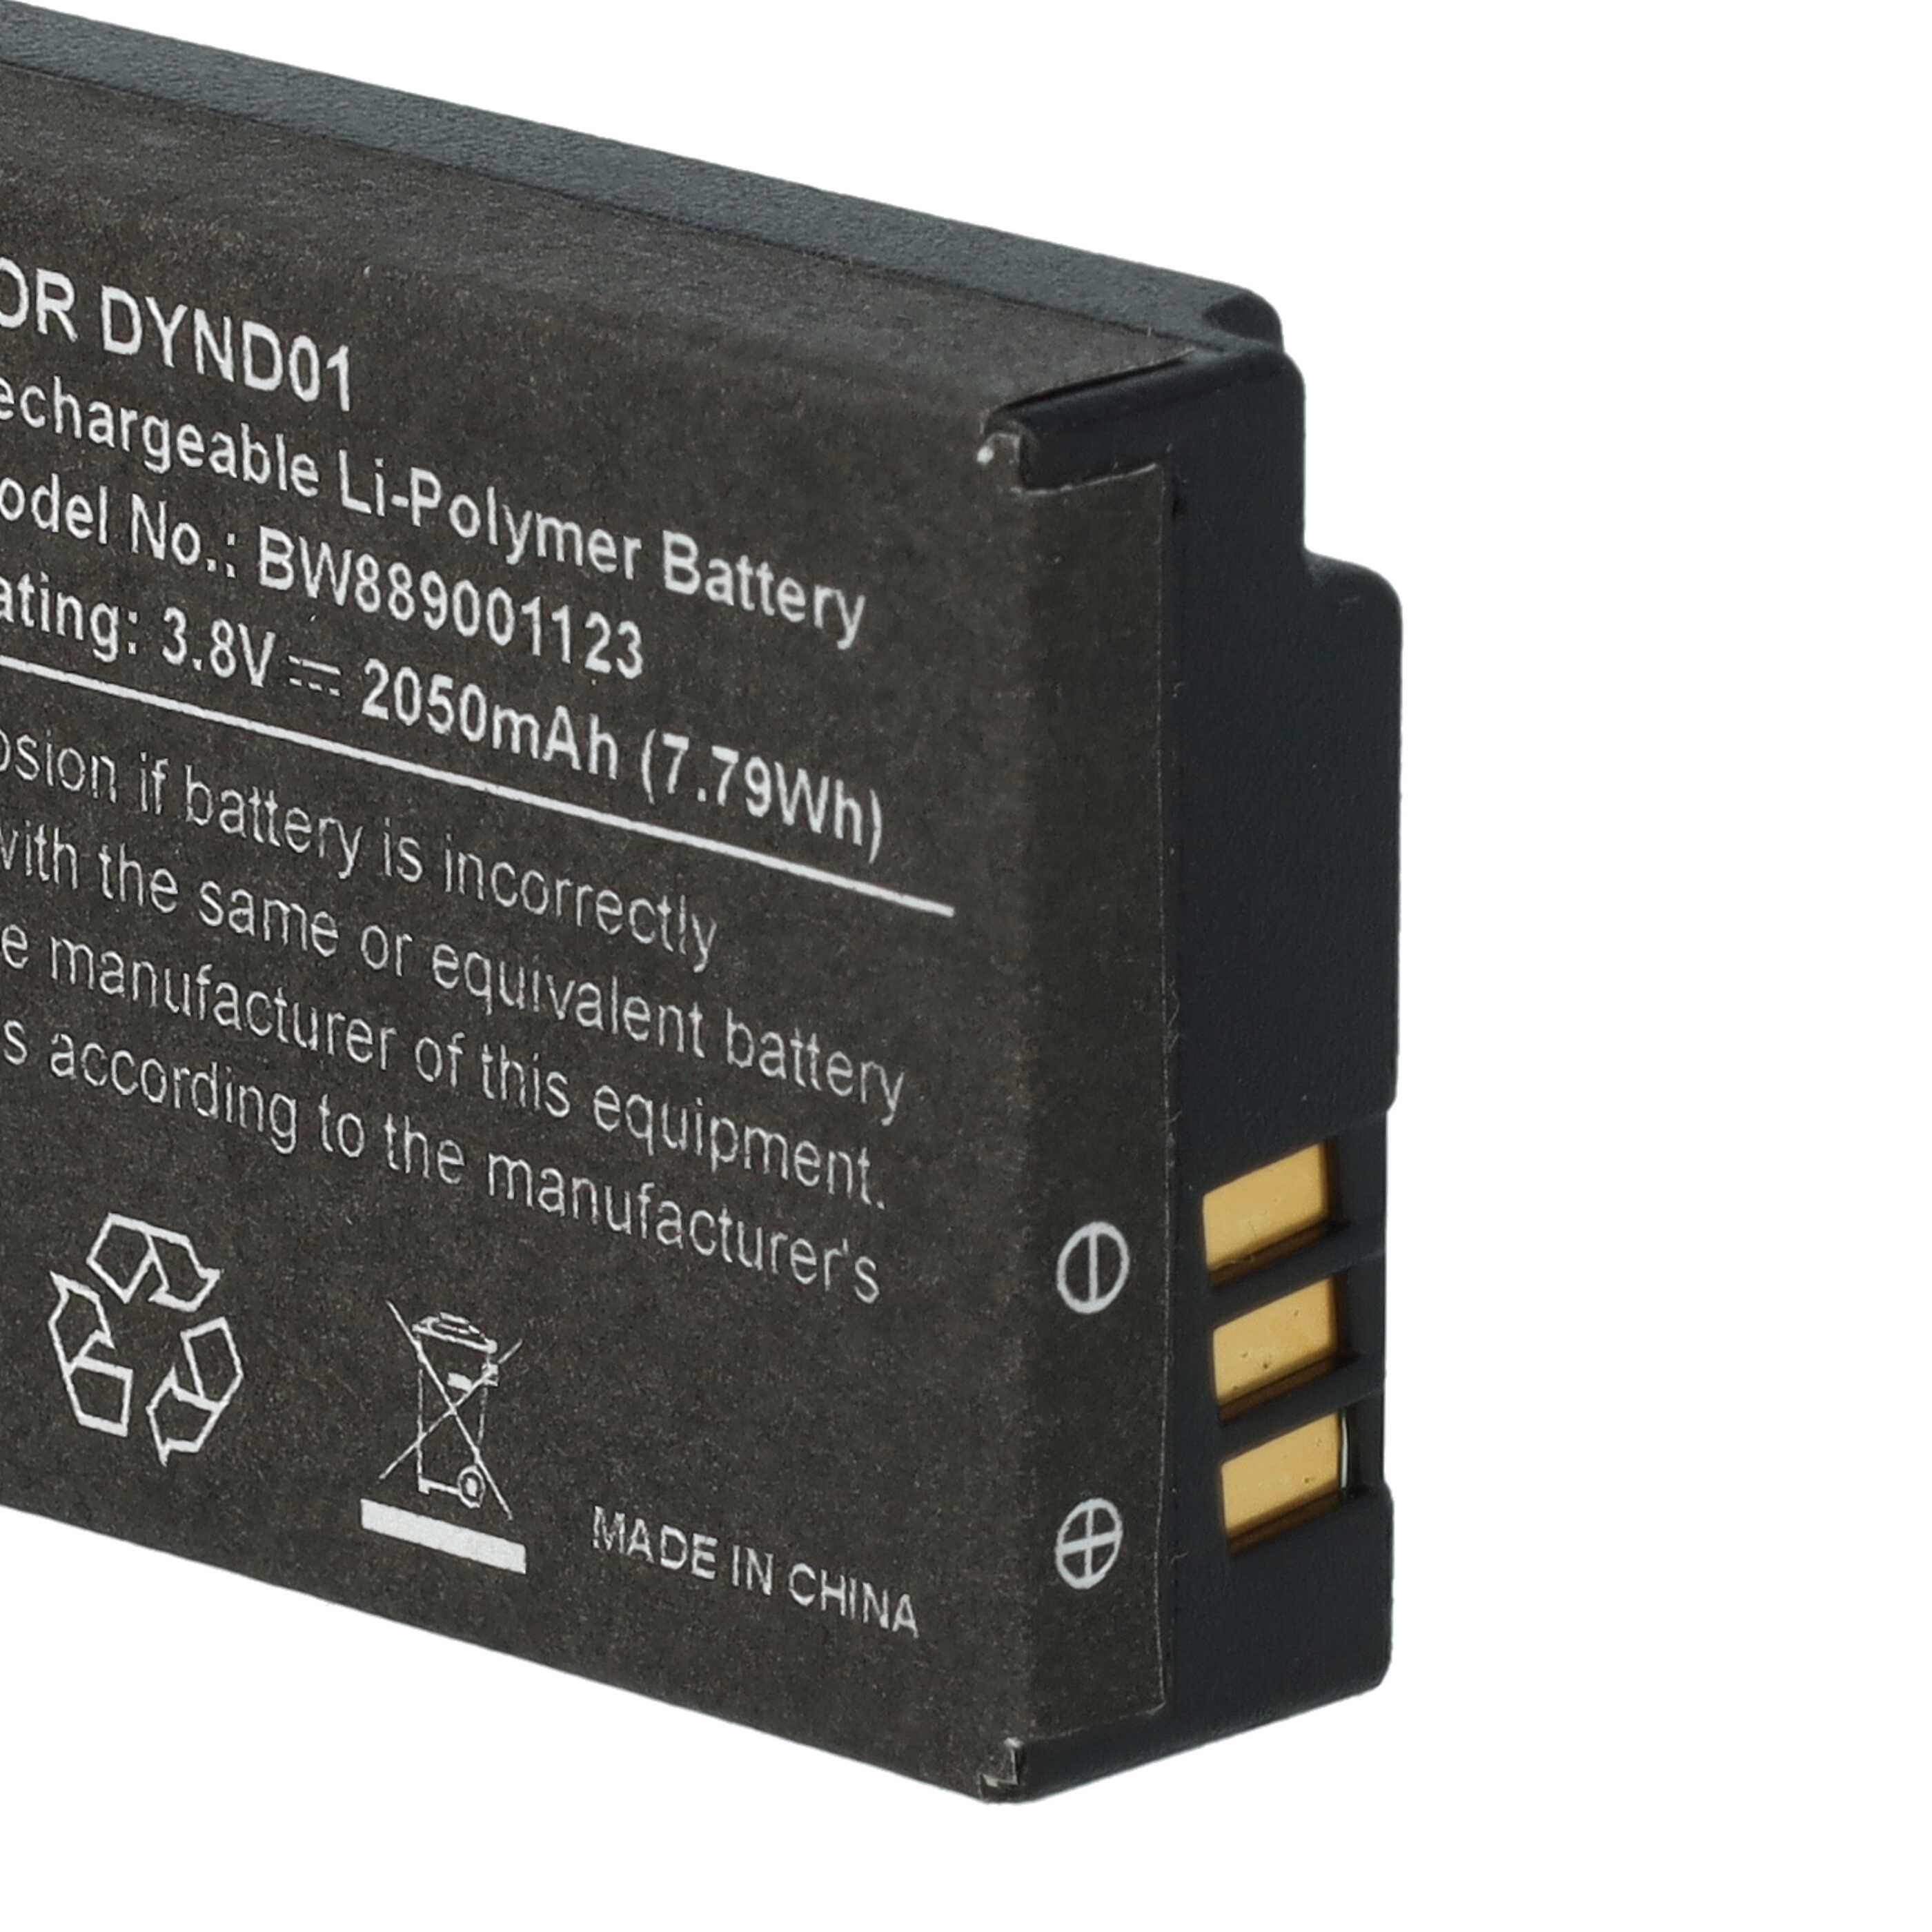 Batterie remplace Microsoft DYND01 remplace Microsoft DYND01 pour console de jeux - 2050mAh, 3,8V